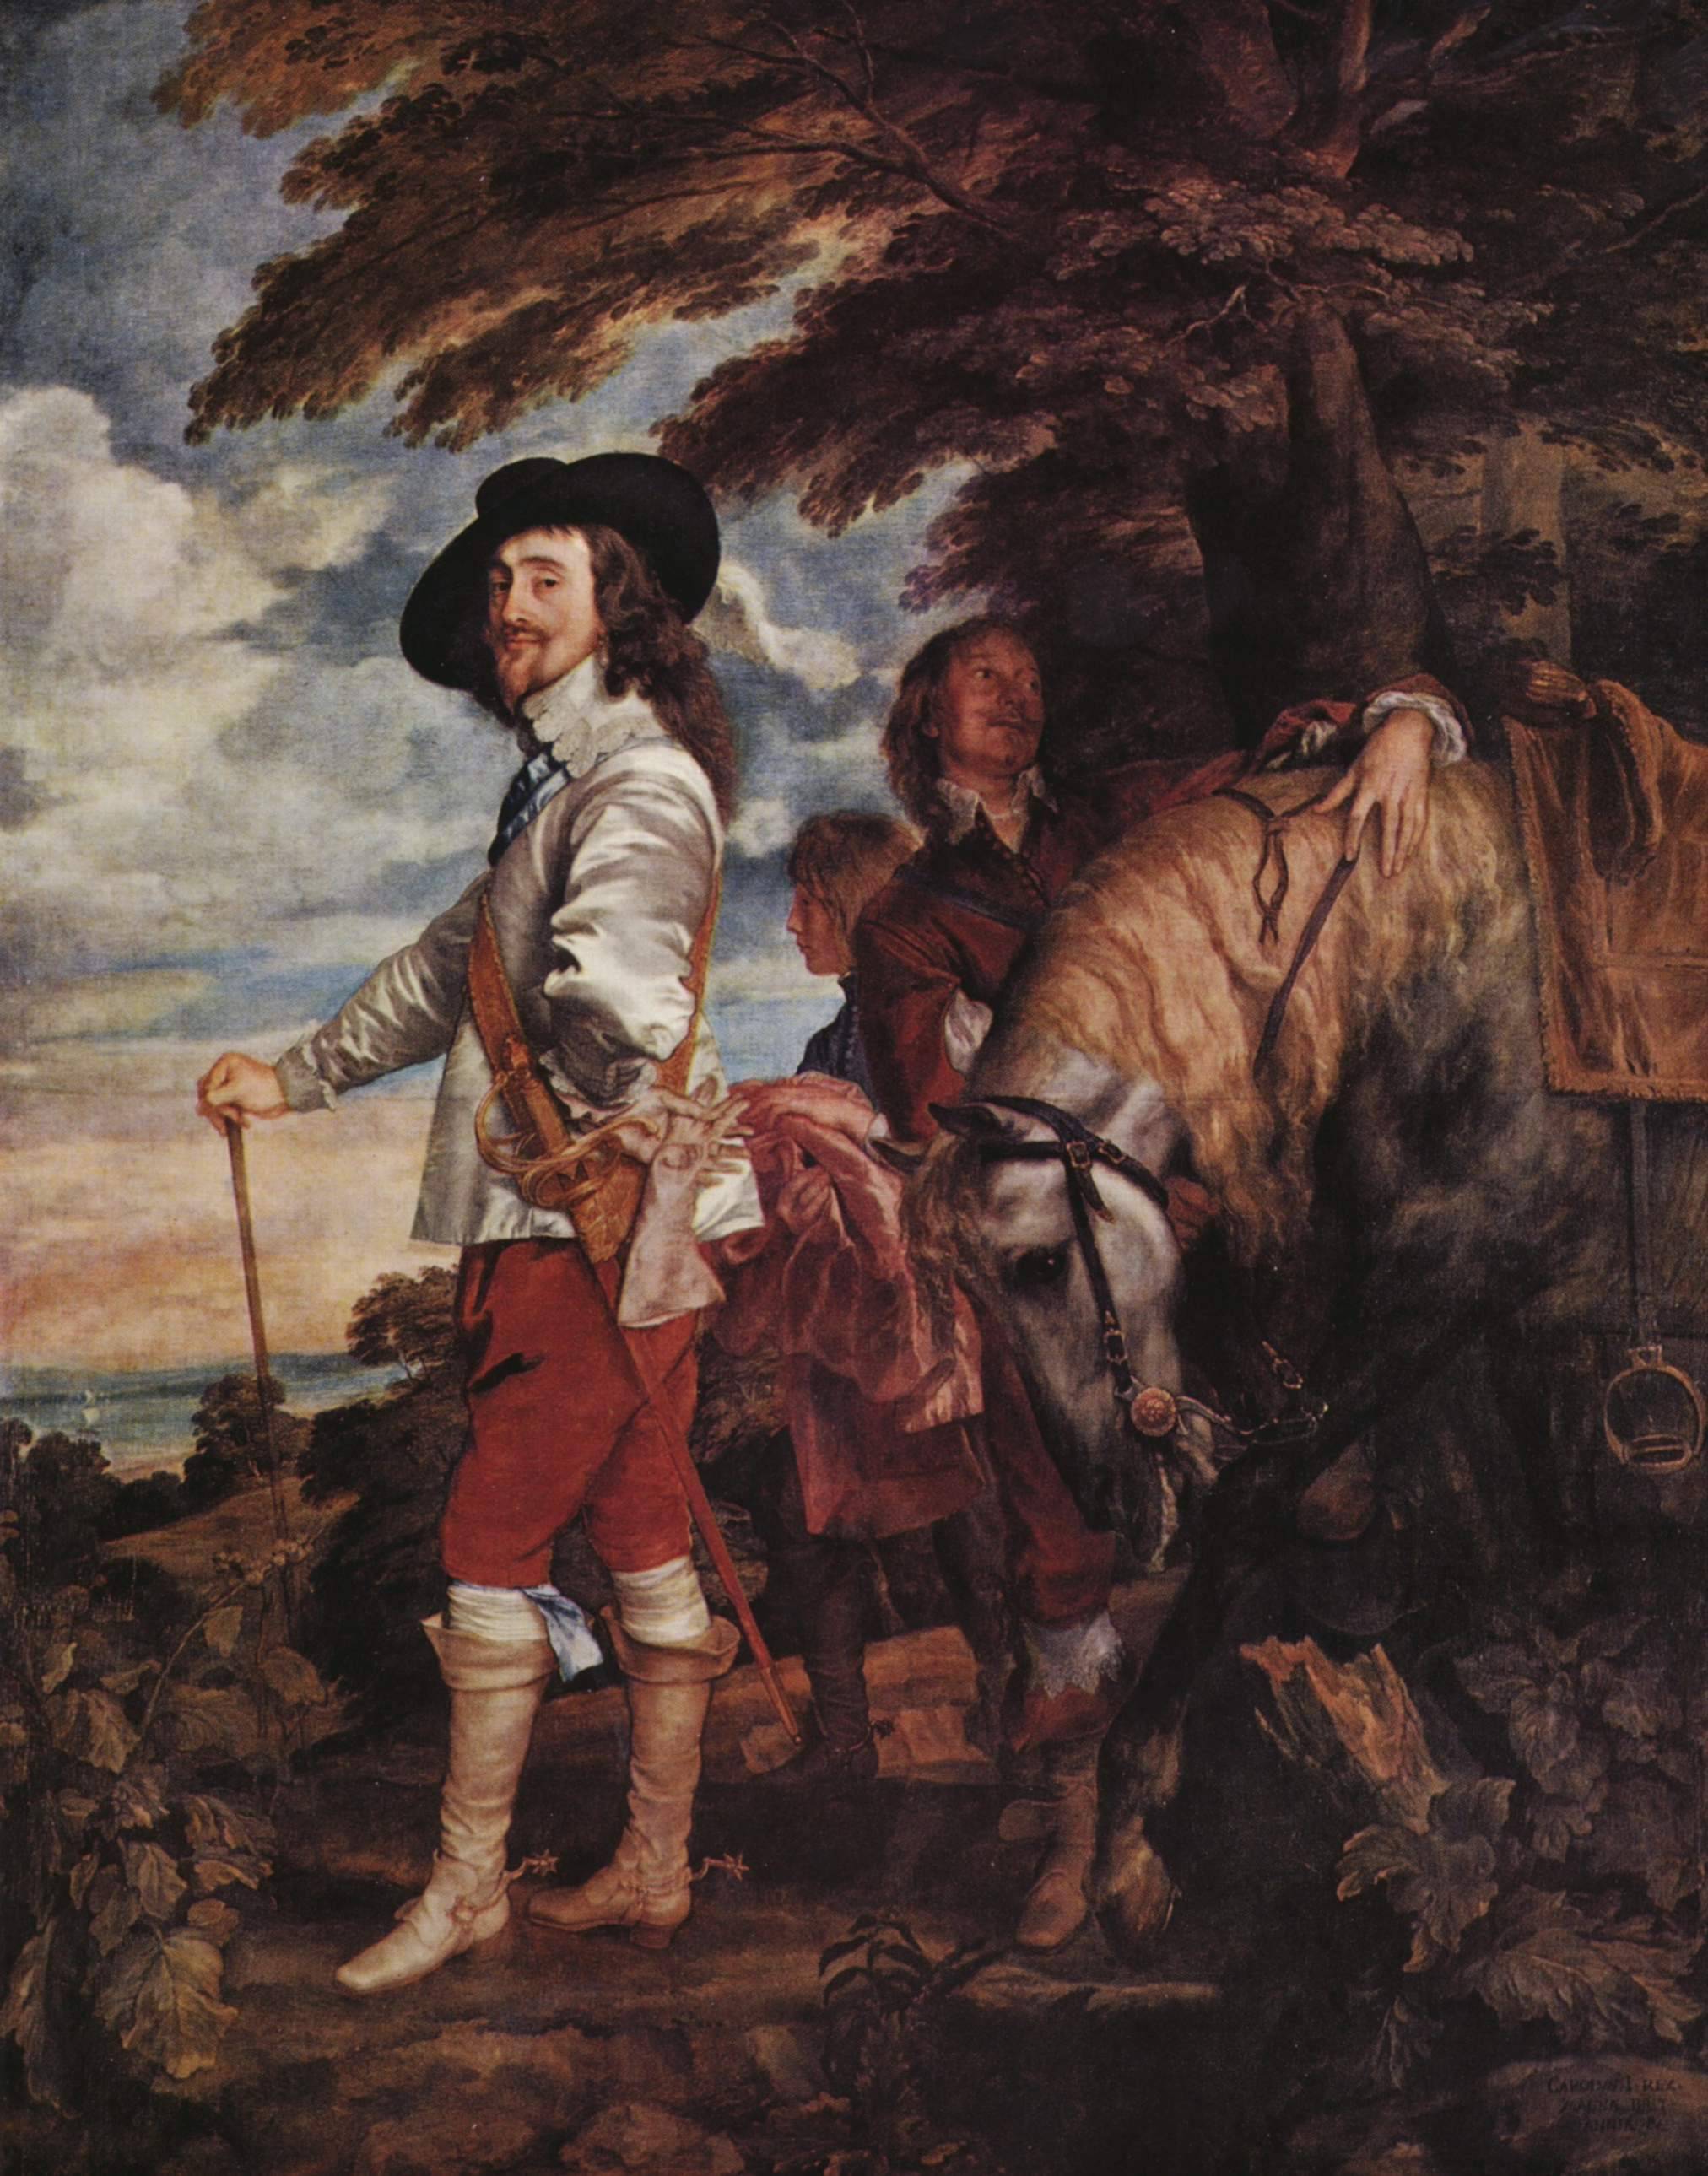 Anthony van Dyck (1635)